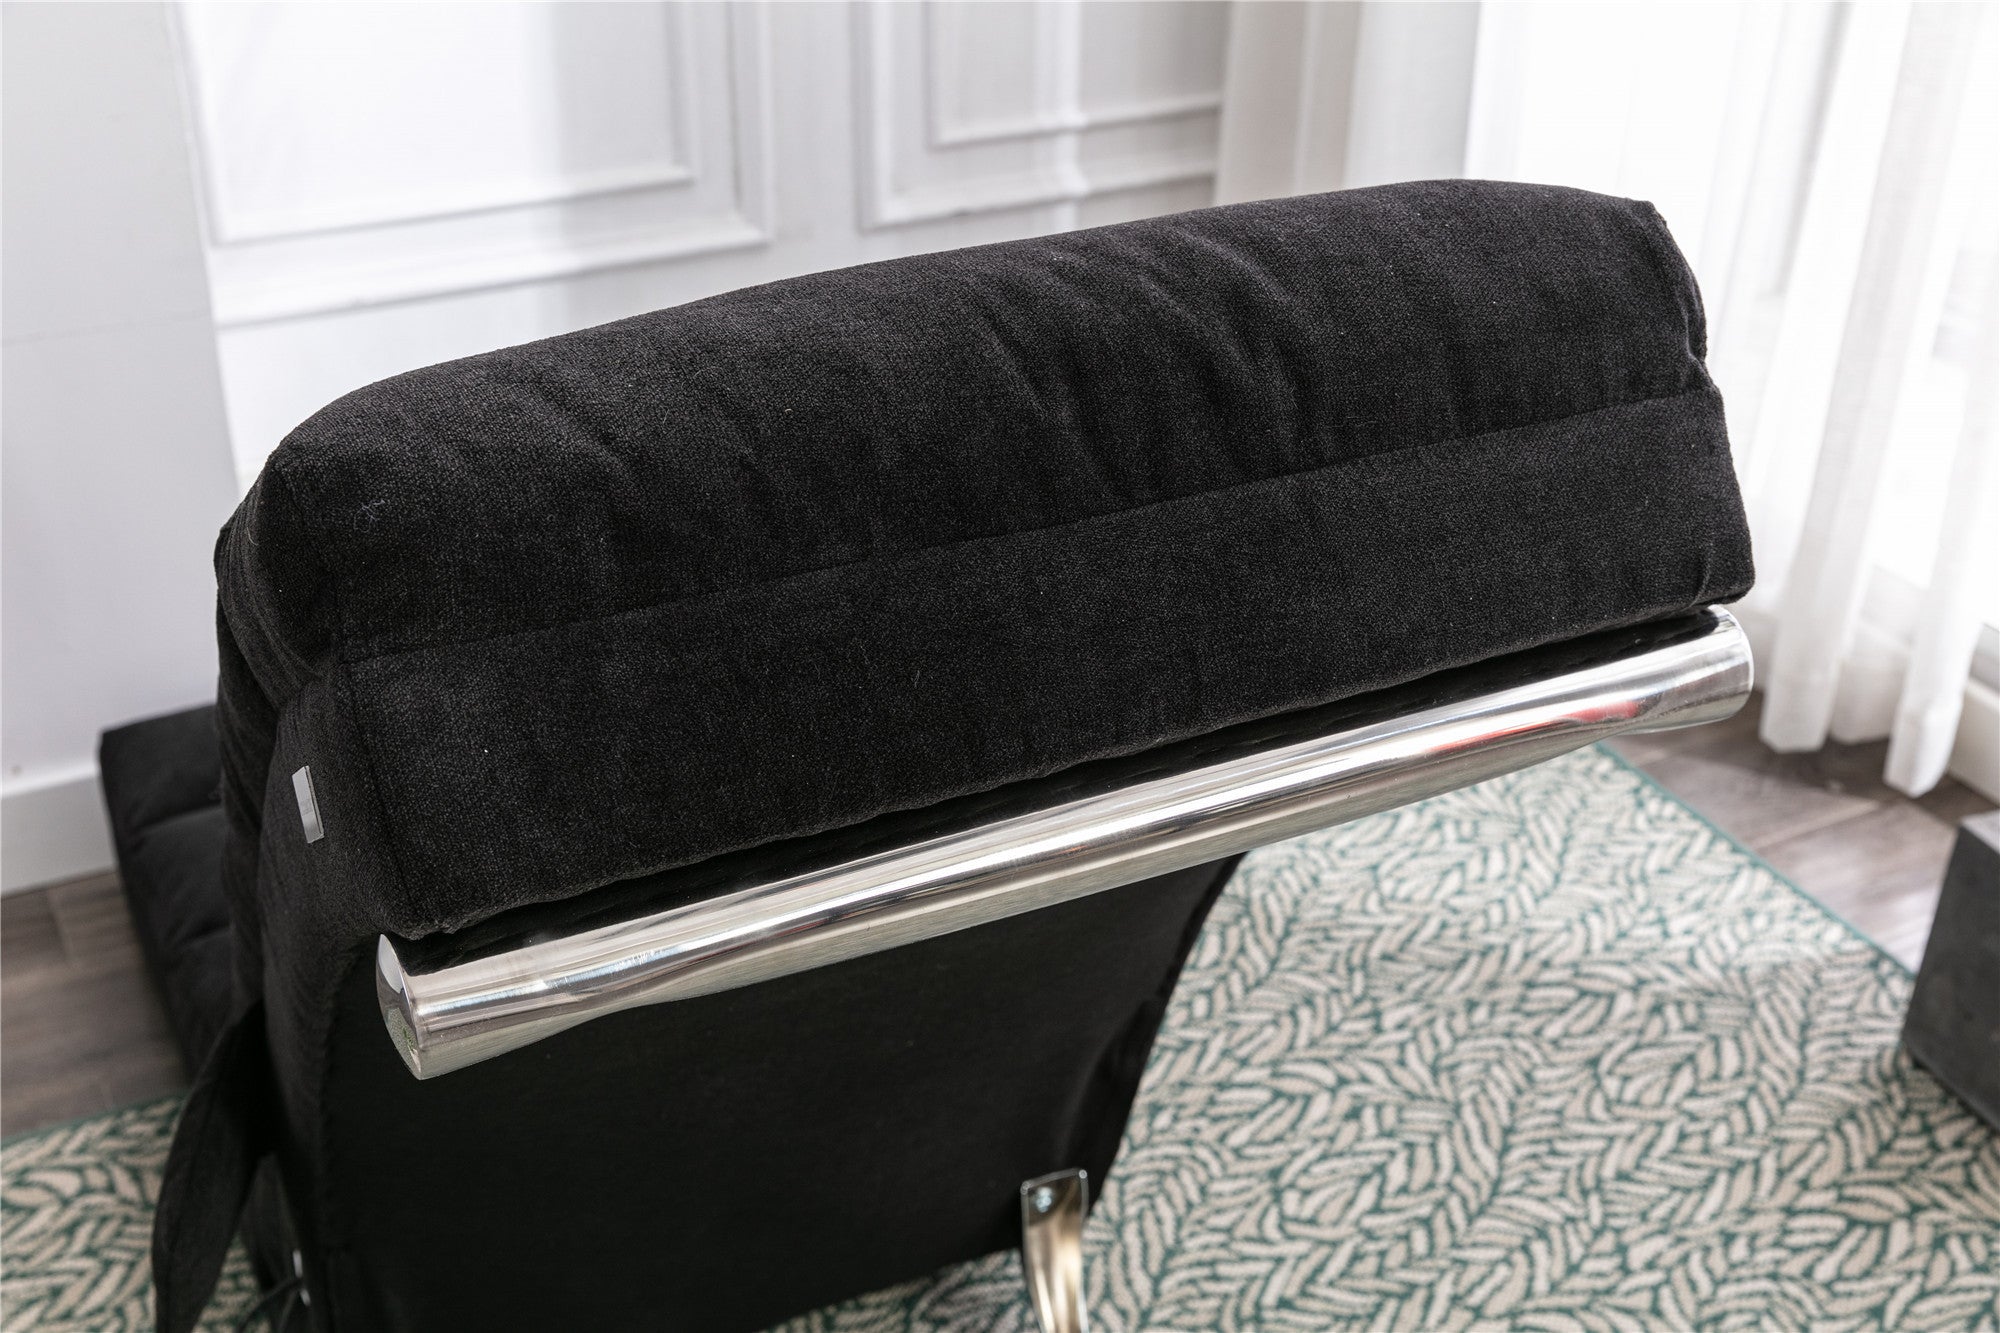 COOLMORE Linen Lounger Indoor Chair (Black)